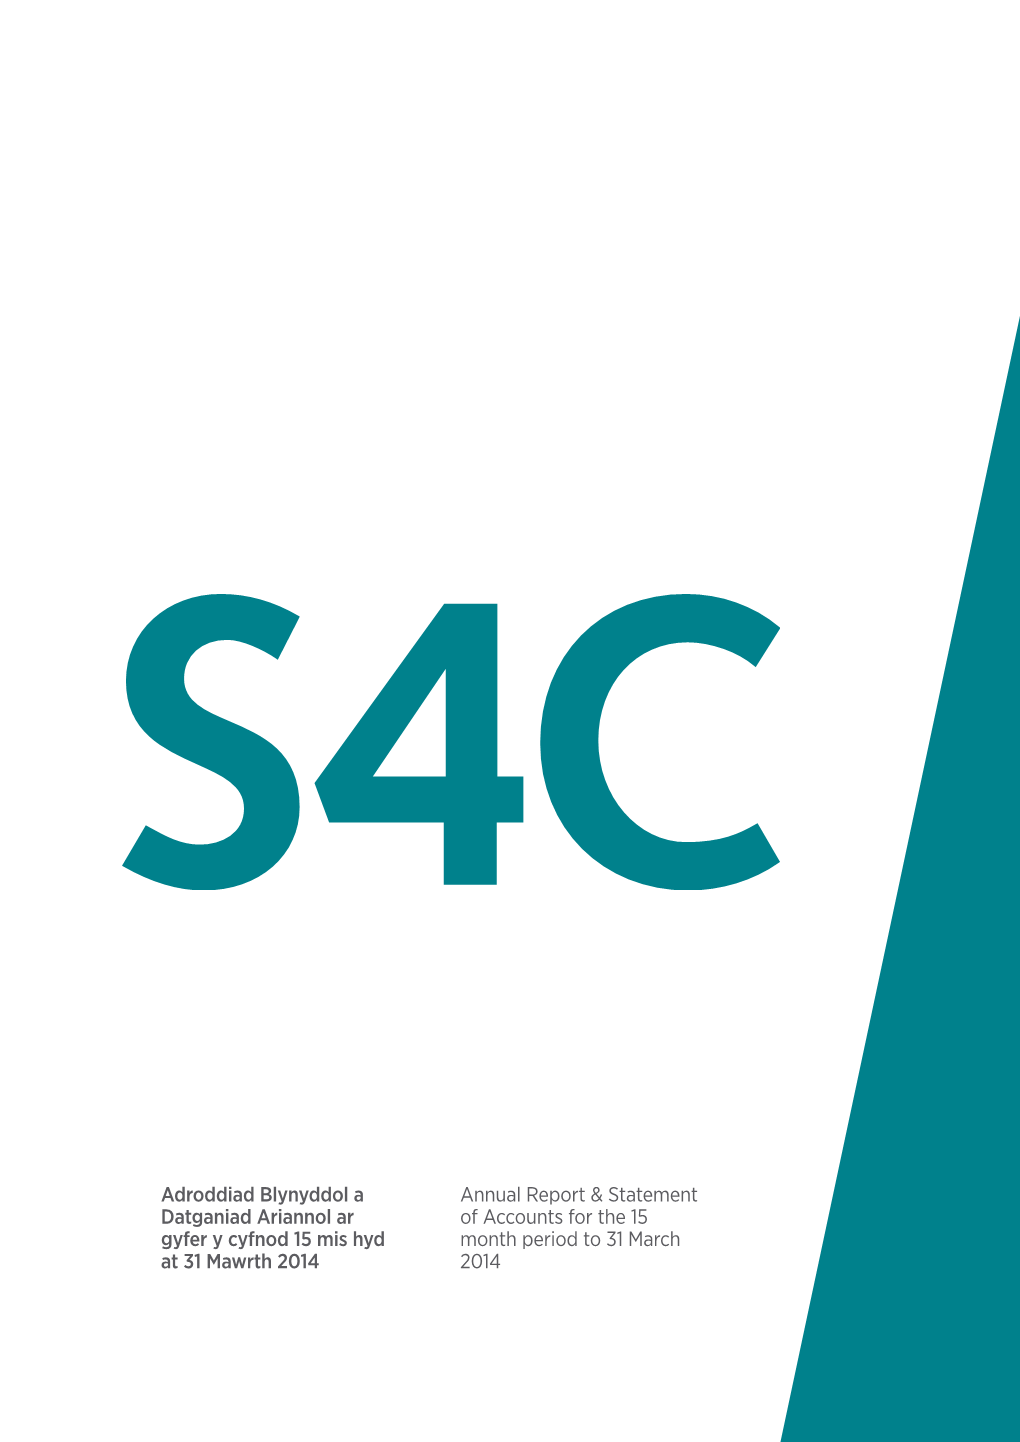 S4c-Annual-Report-2013-2014.Pdf